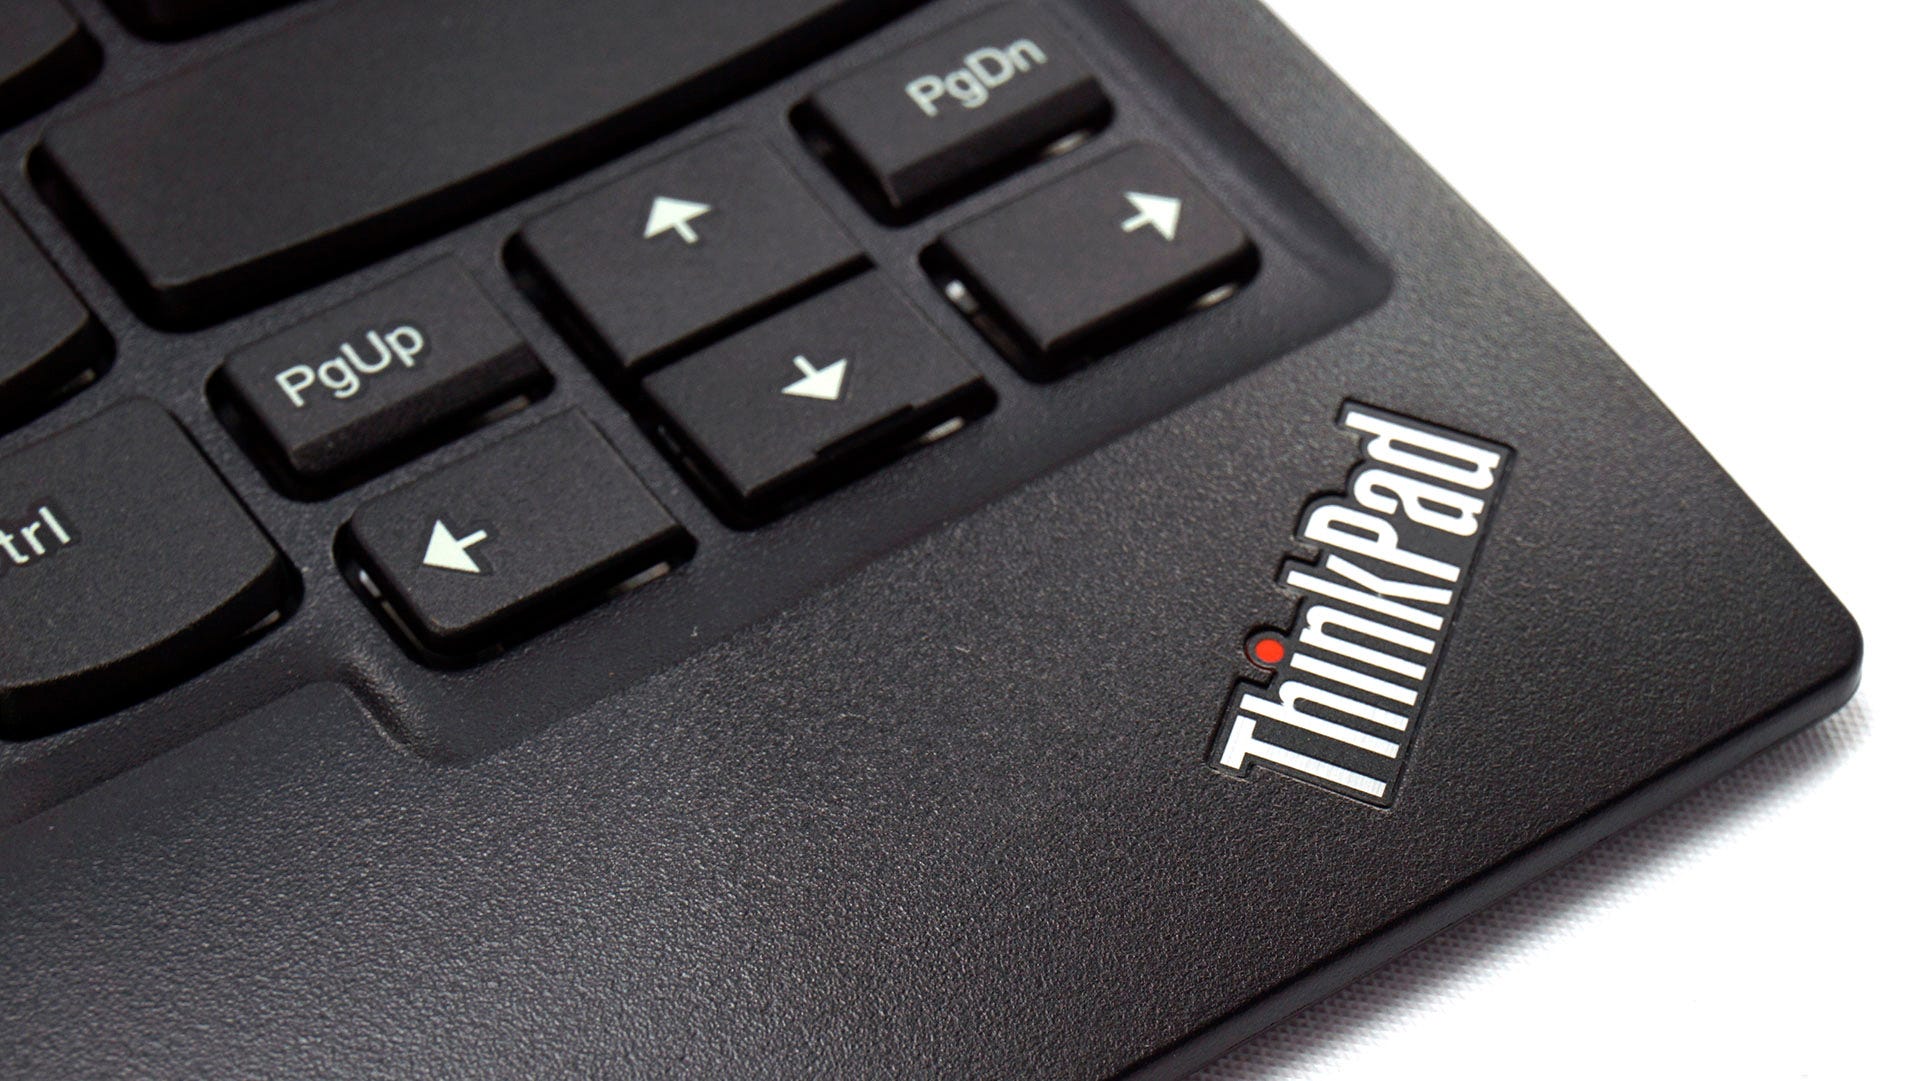 ThinkPad-logotyp på tangentbordet